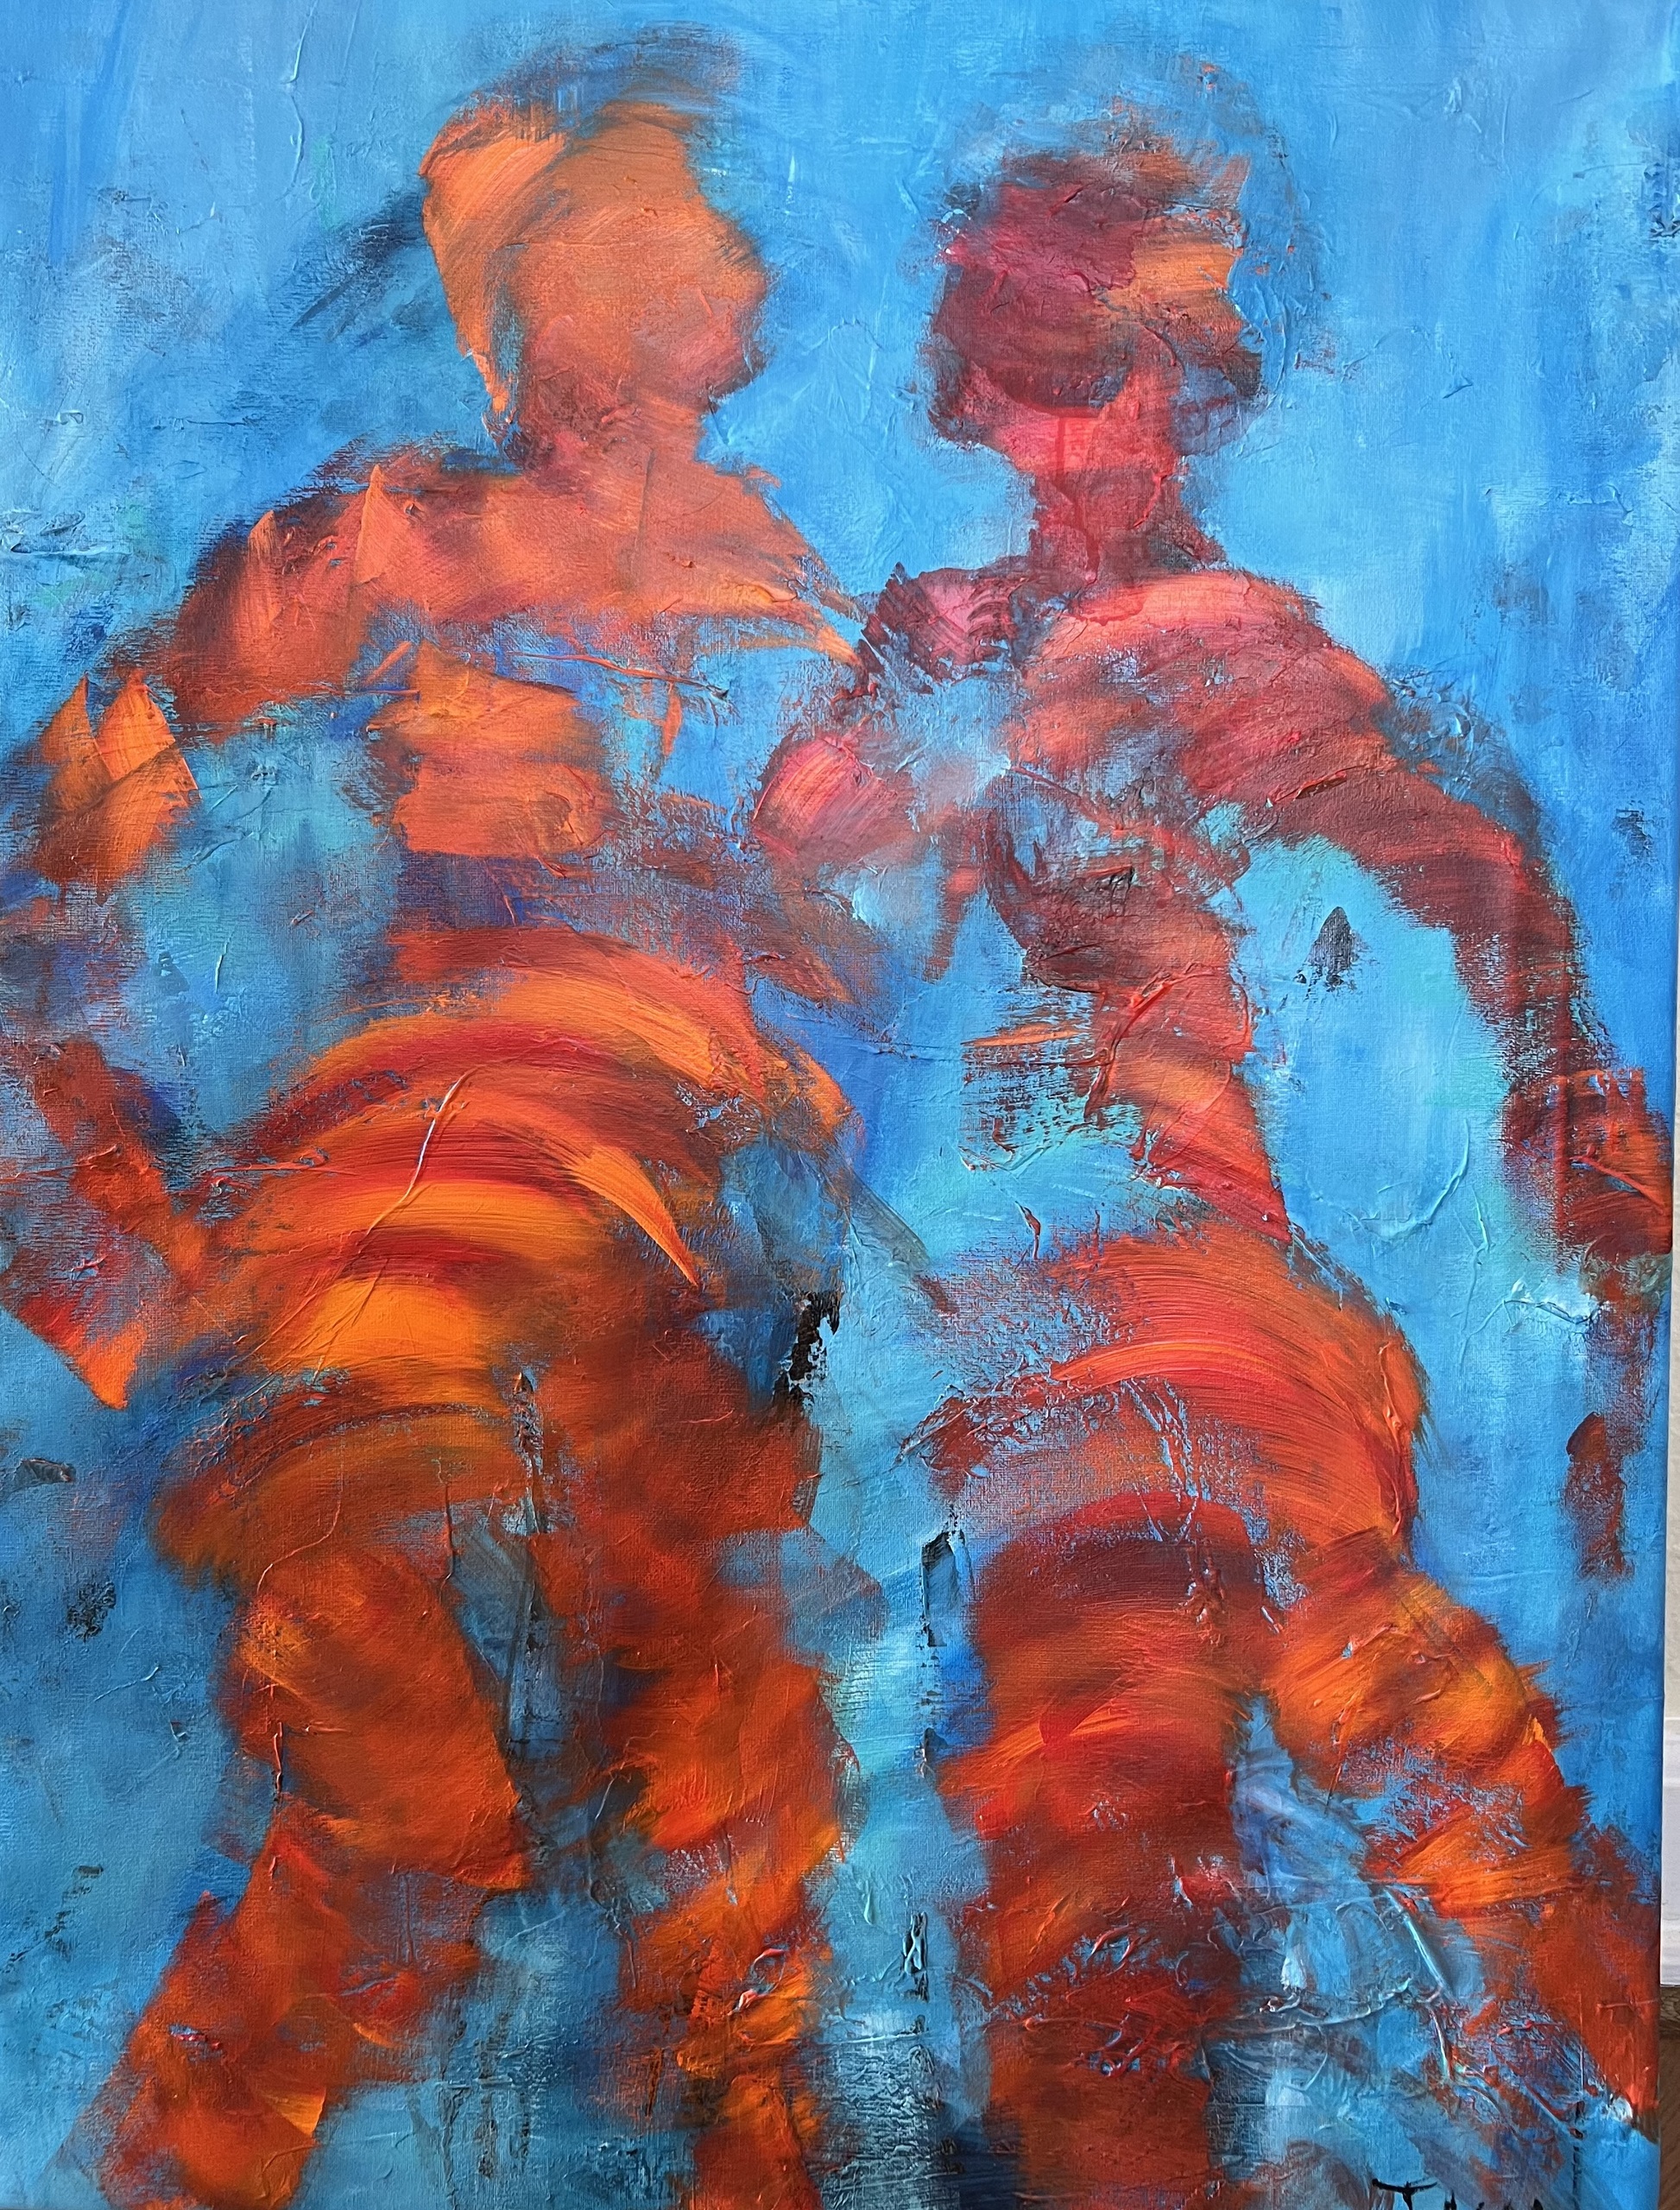 Spændende maleri med masser af varme og glæde i de røde og orange varme farver, der spiller fint op mod de blide blå nuancer.